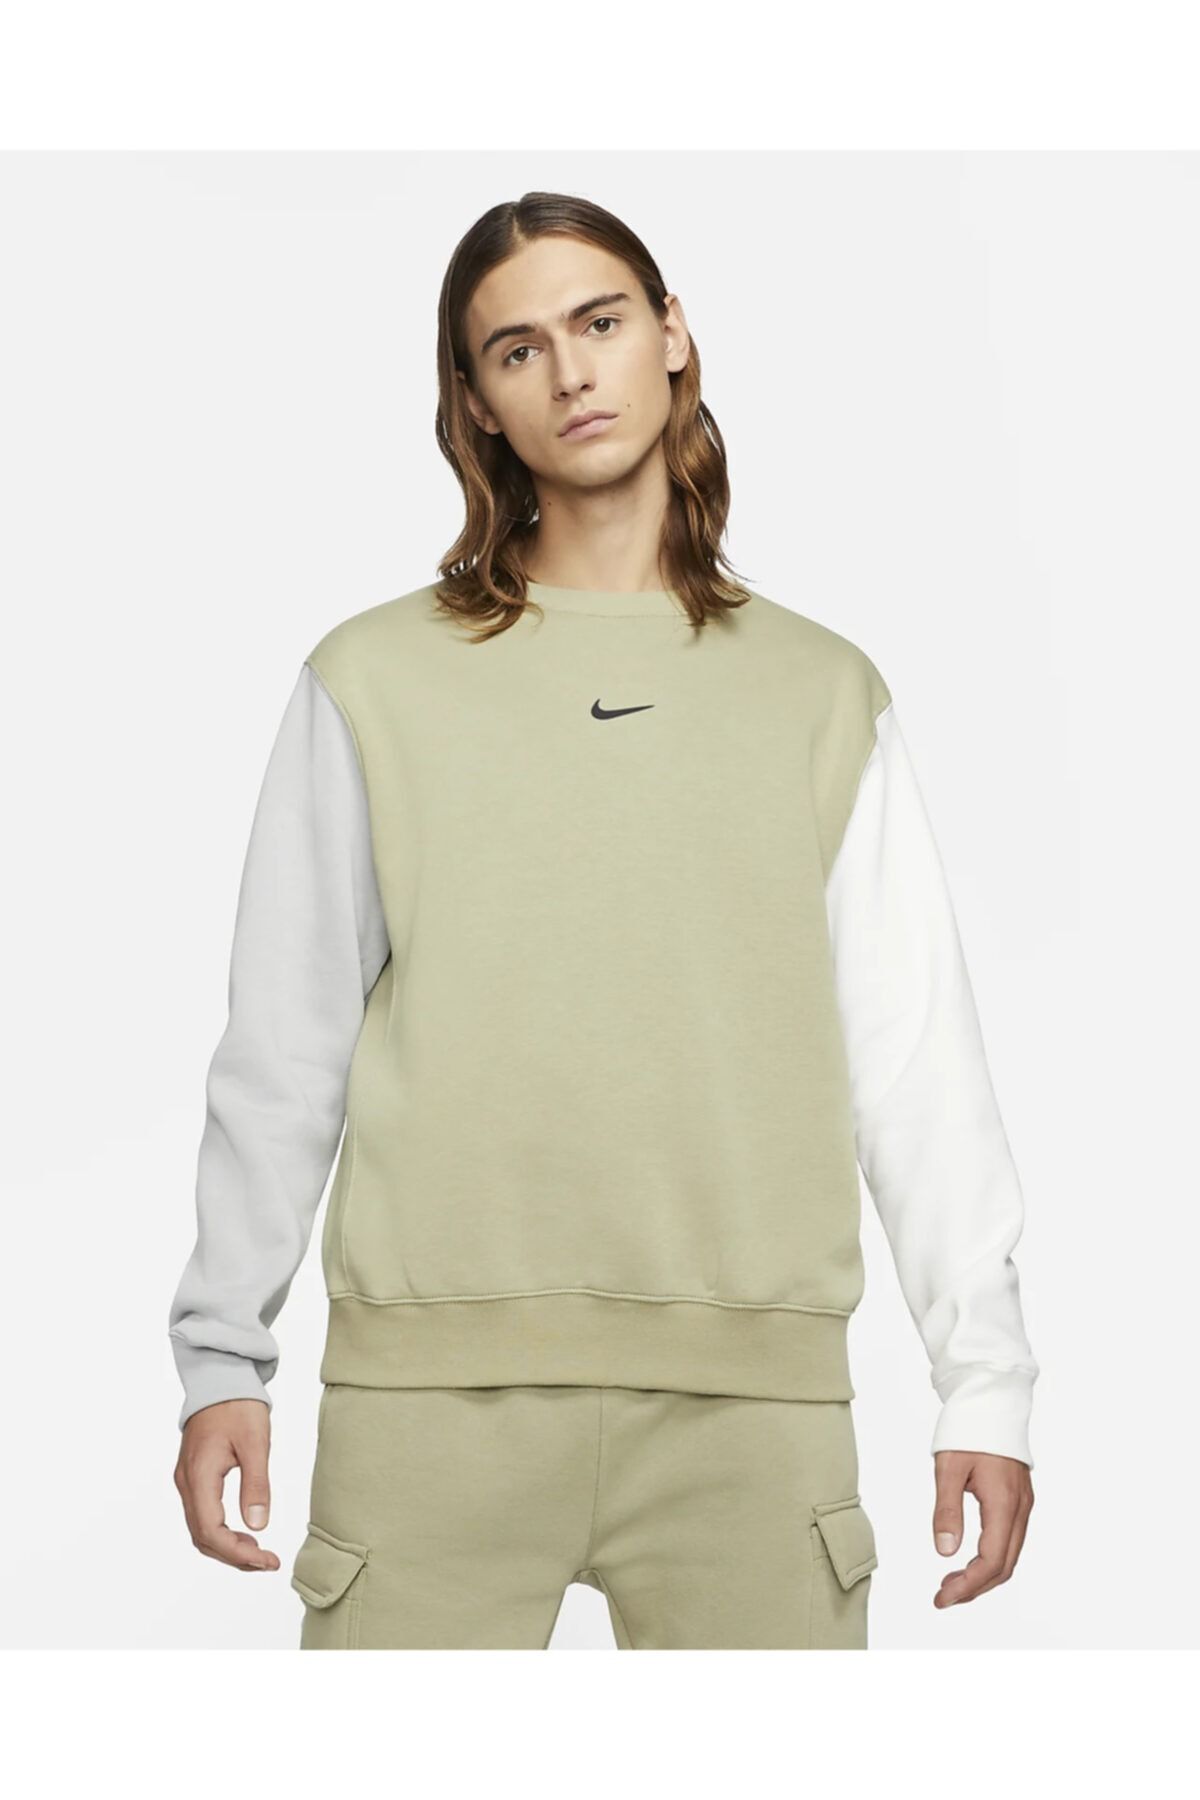 Nike Men's Fleece Swoosh Crew Sportswear